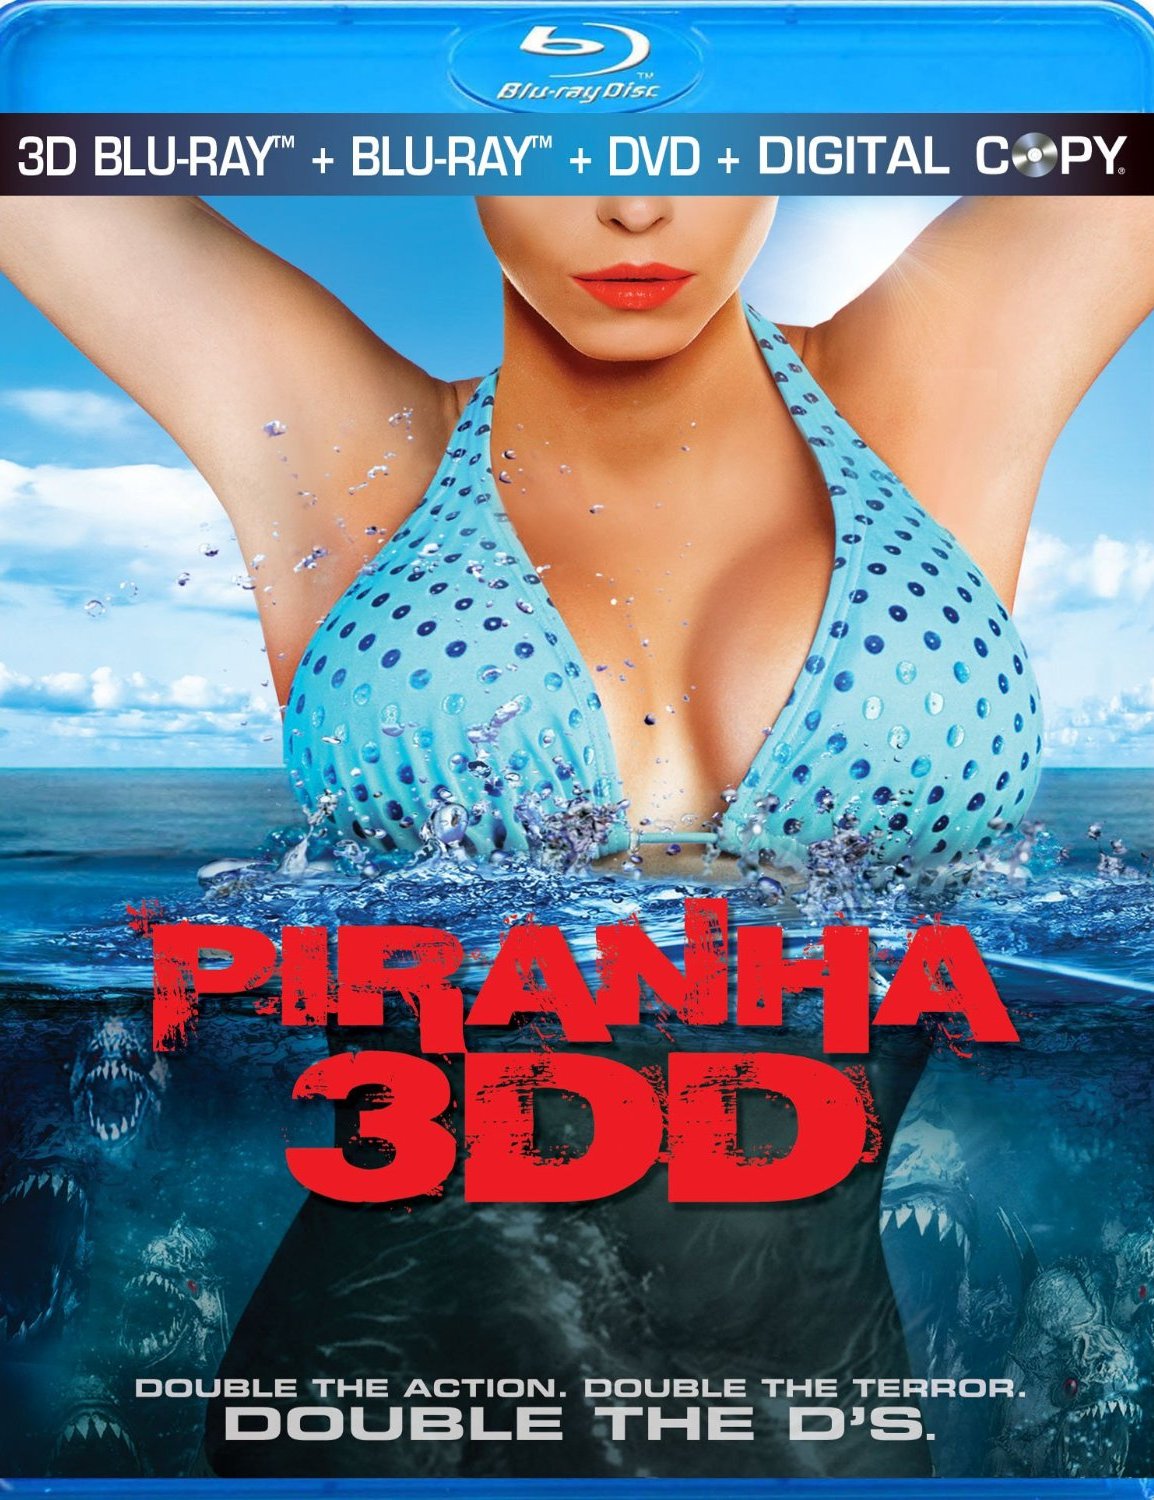 alanna berry recommends piranha 3dd hot scene pic